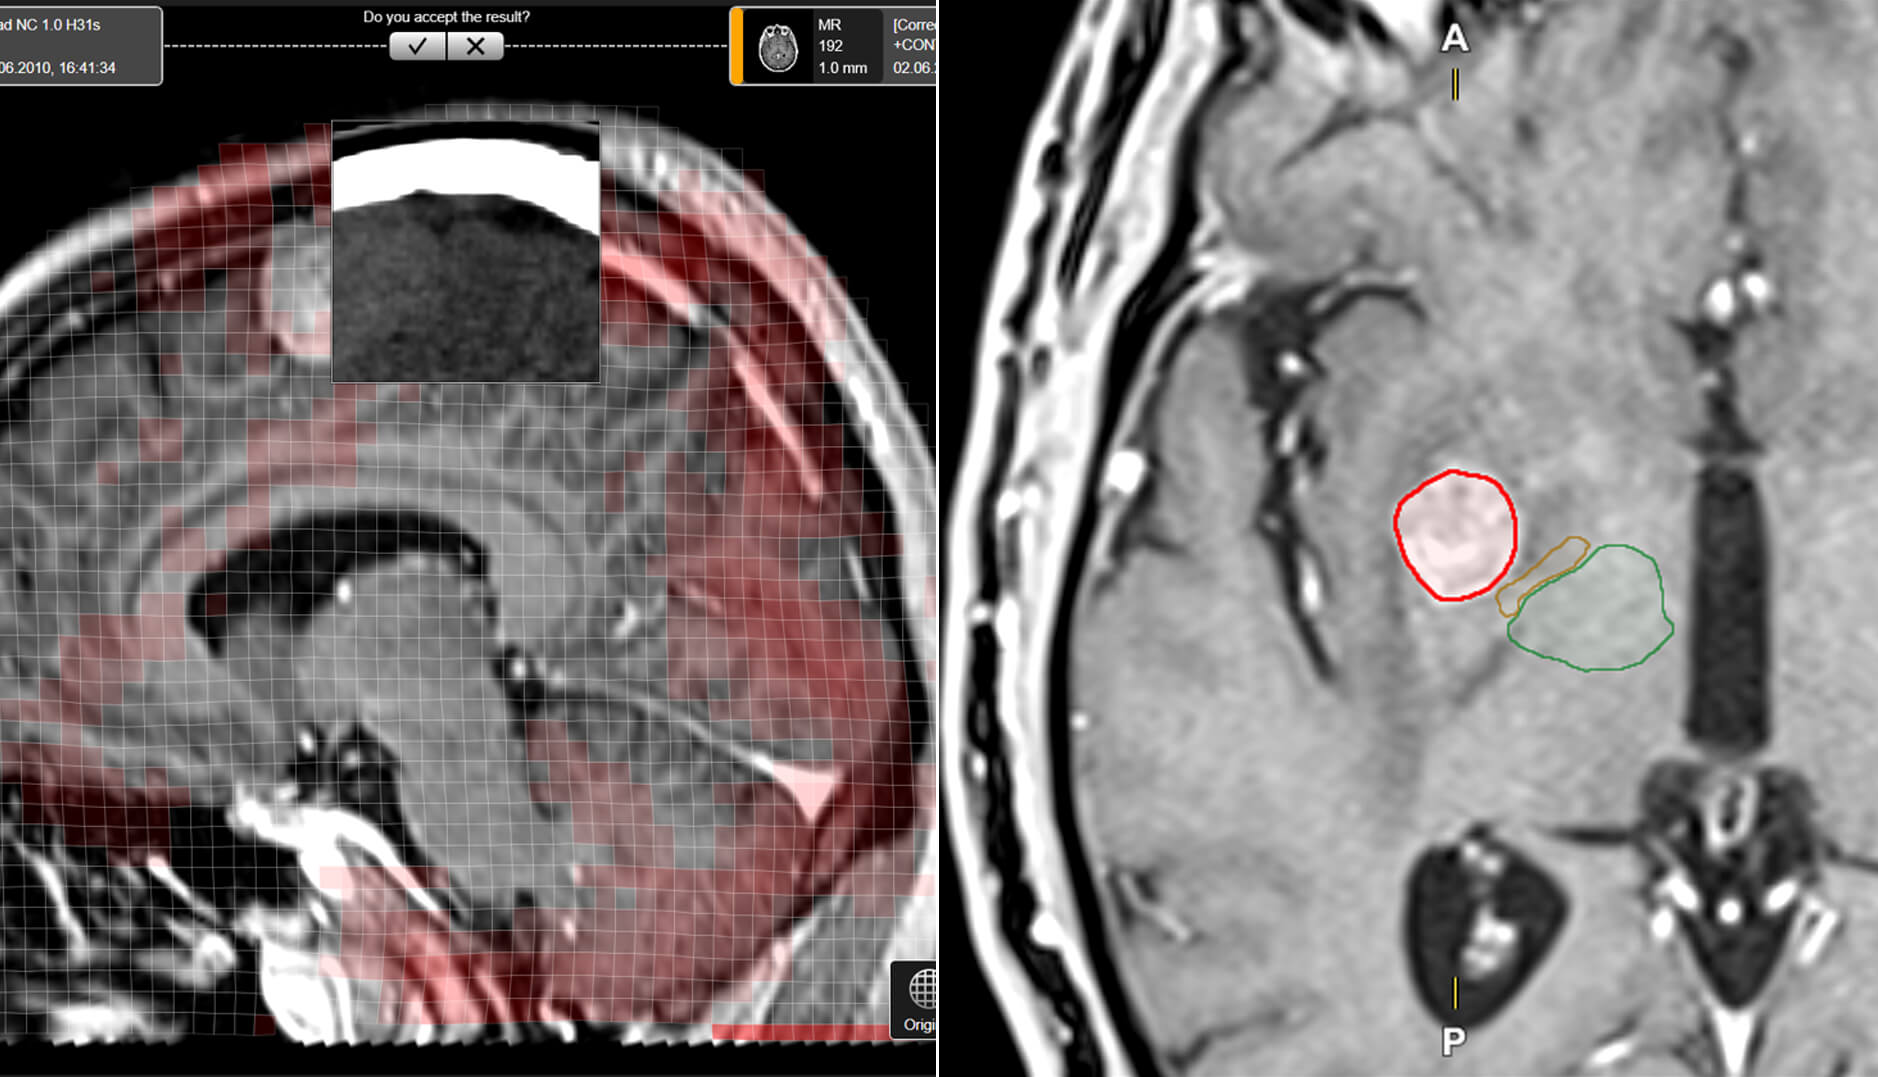 该软件屏幕截图显示了用户可用的视图和数据，用户使用 Elements 软件应用程序进行放射治疗和放射外科治疗计划。